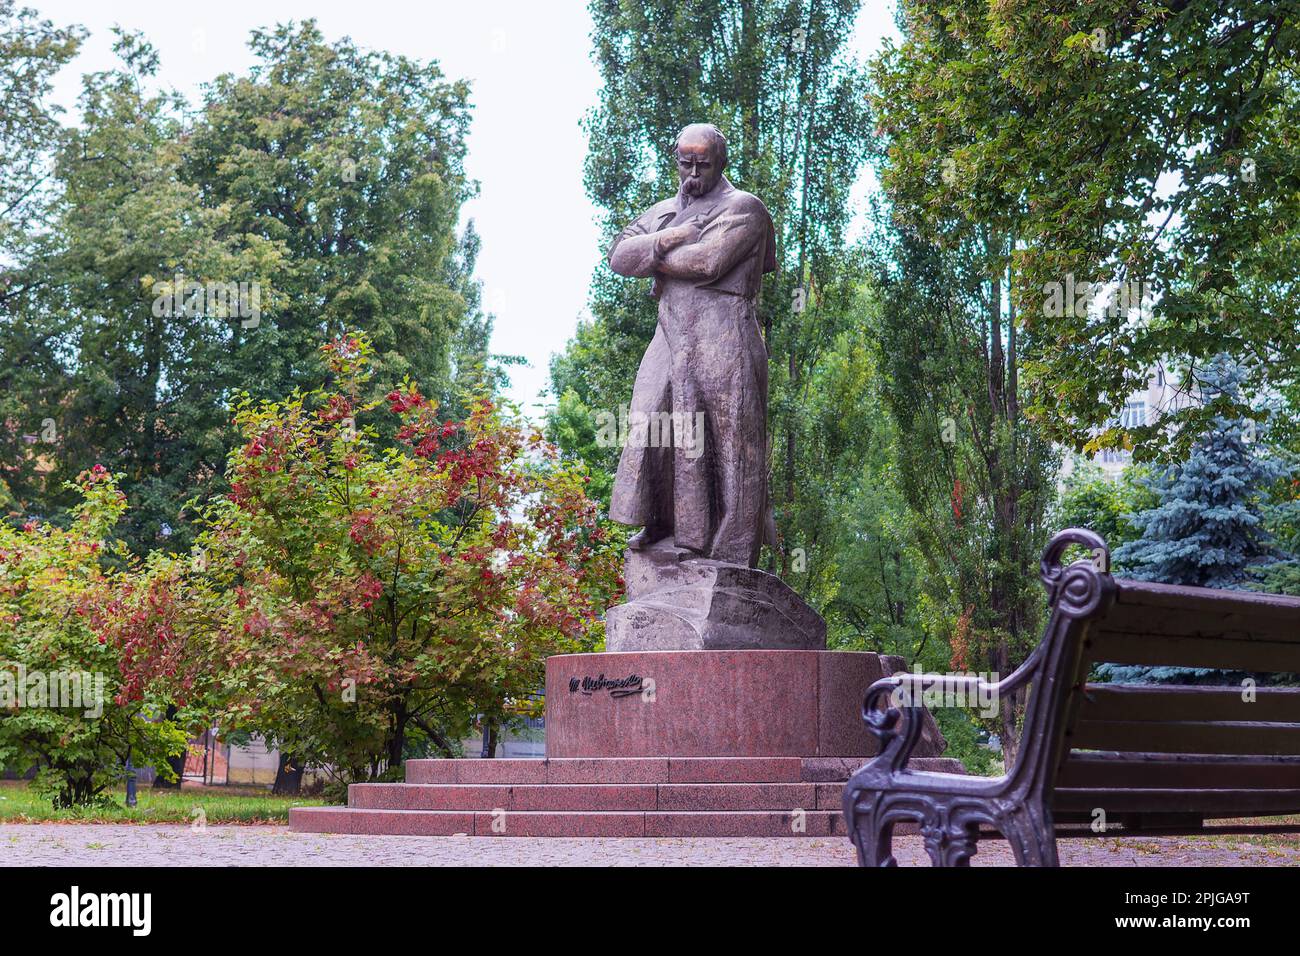 Minsk, Belarus - August 01, 2015: Monument to Taras Shevchenko near the Ukrainian Embassy in Belarus Stock Photo